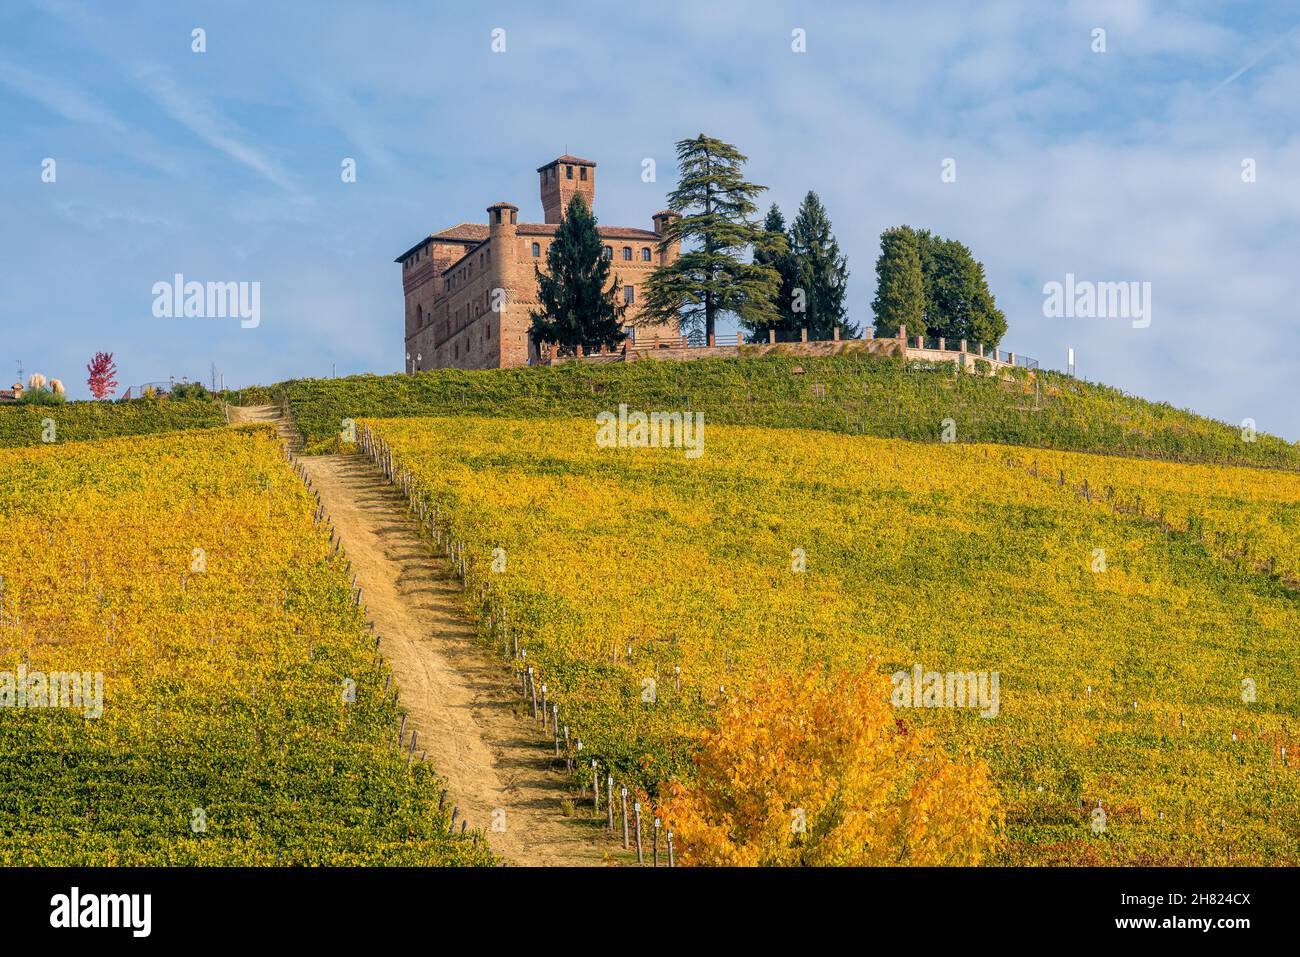 Belles collines et vignobles en automne autour du château de Grinzane Cavour.Dans la région de Langhe, Cuneo, Piémont, Italie. Banque D'Images